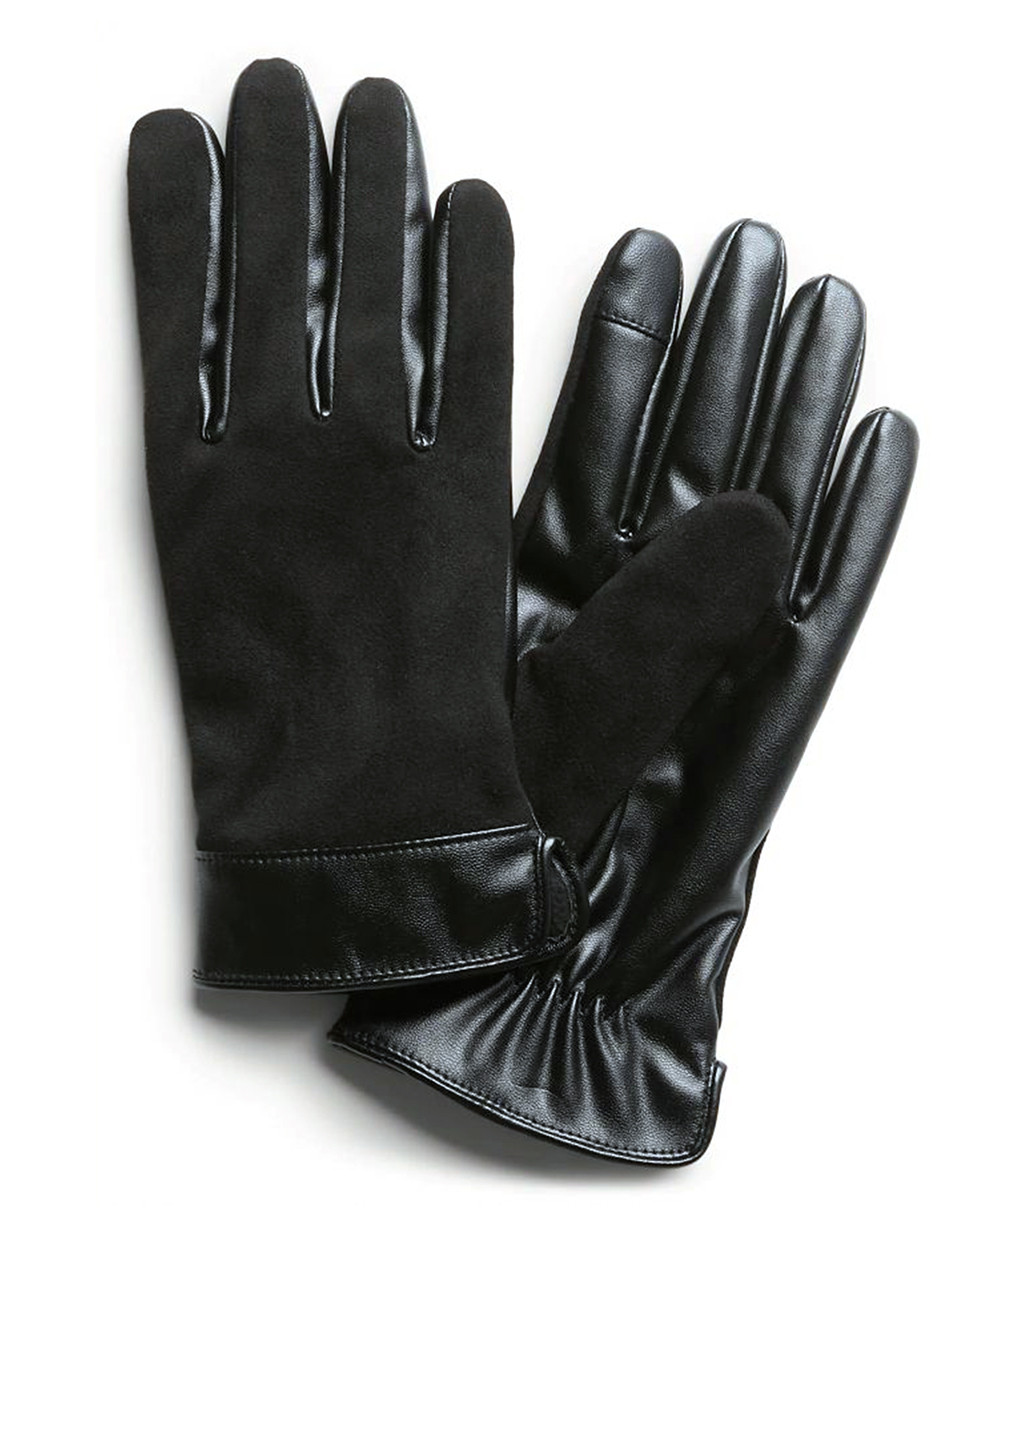 Перчатки Banana Republic однотонные чёрные кэжуалы полиэстер, искусственная замша, искусственная кожа